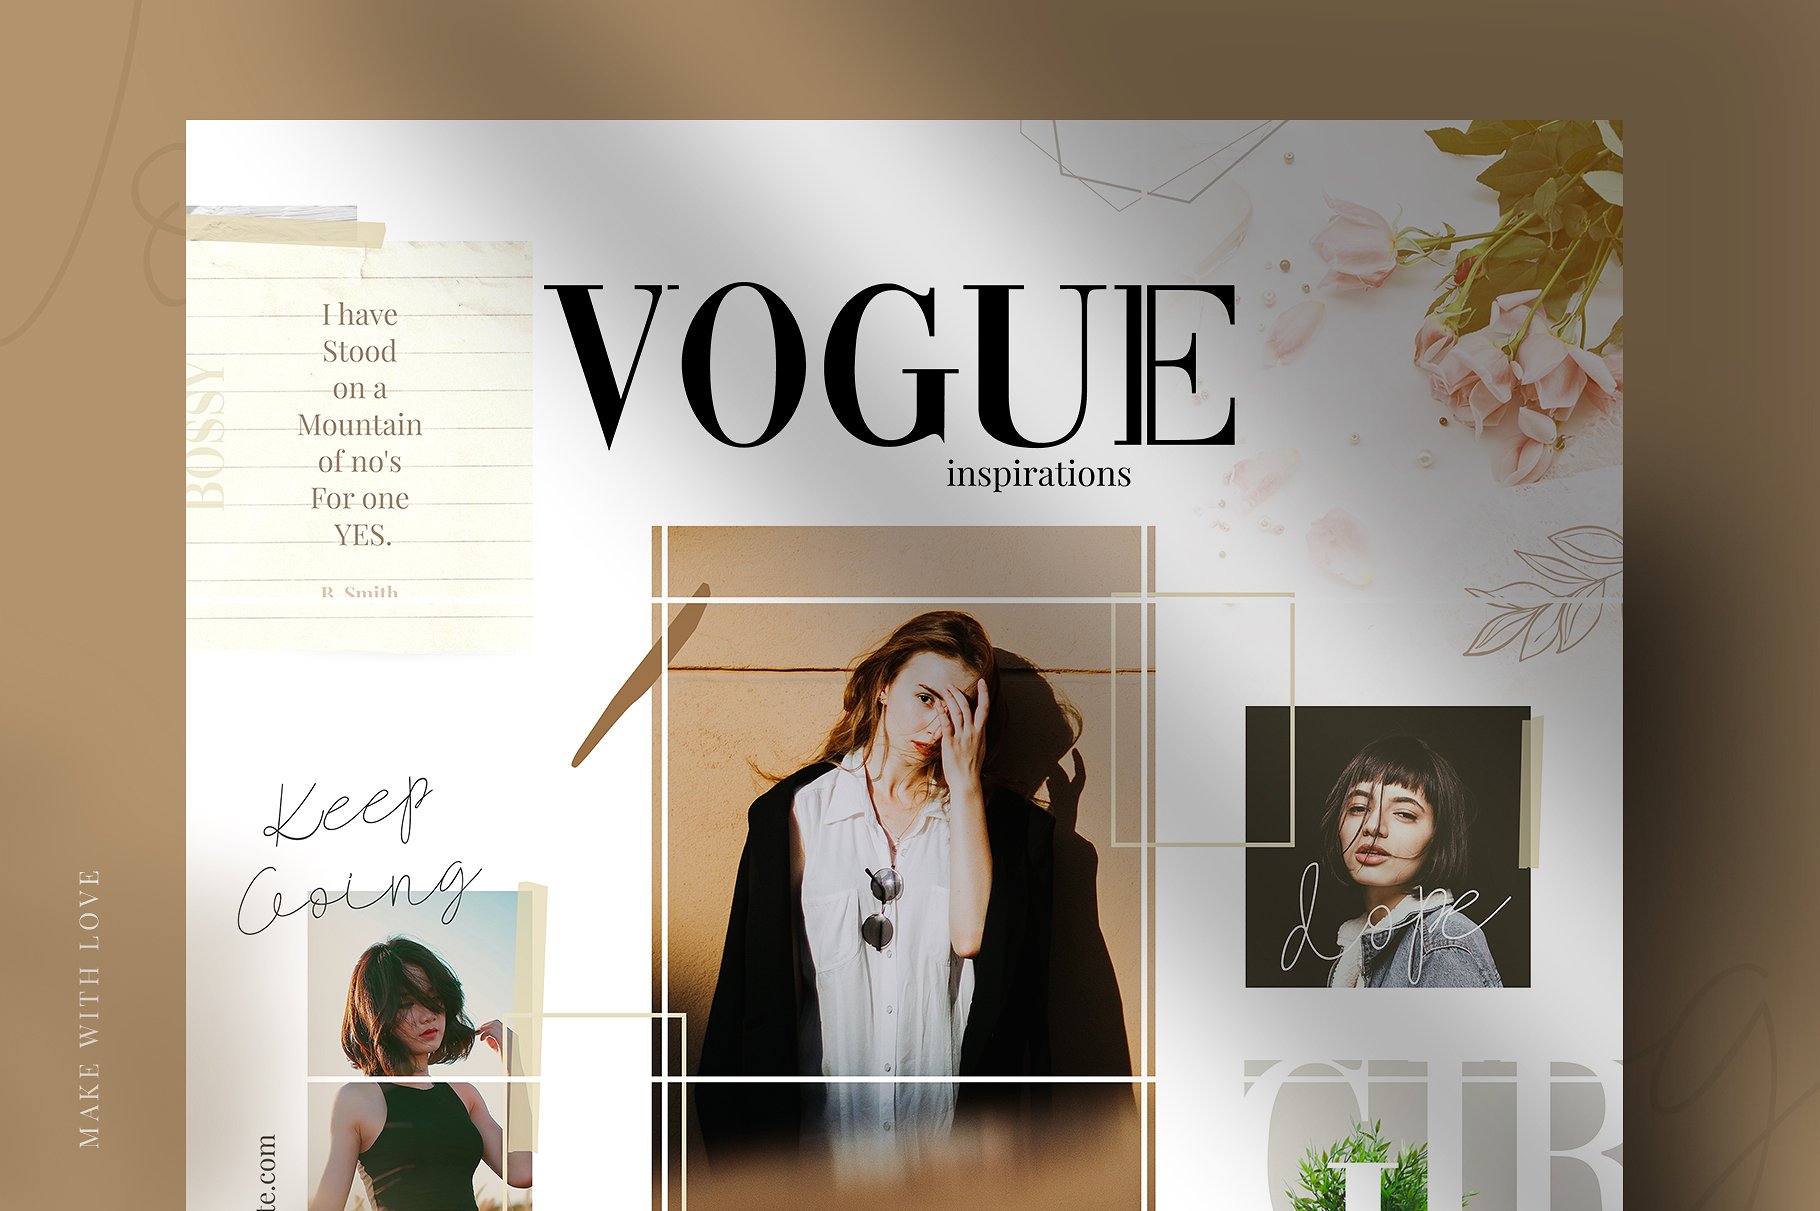 时尚高端的Instagram社交媒体拼图模板素材库精选 Vogue – instagram puzzle [psd]插图(2)